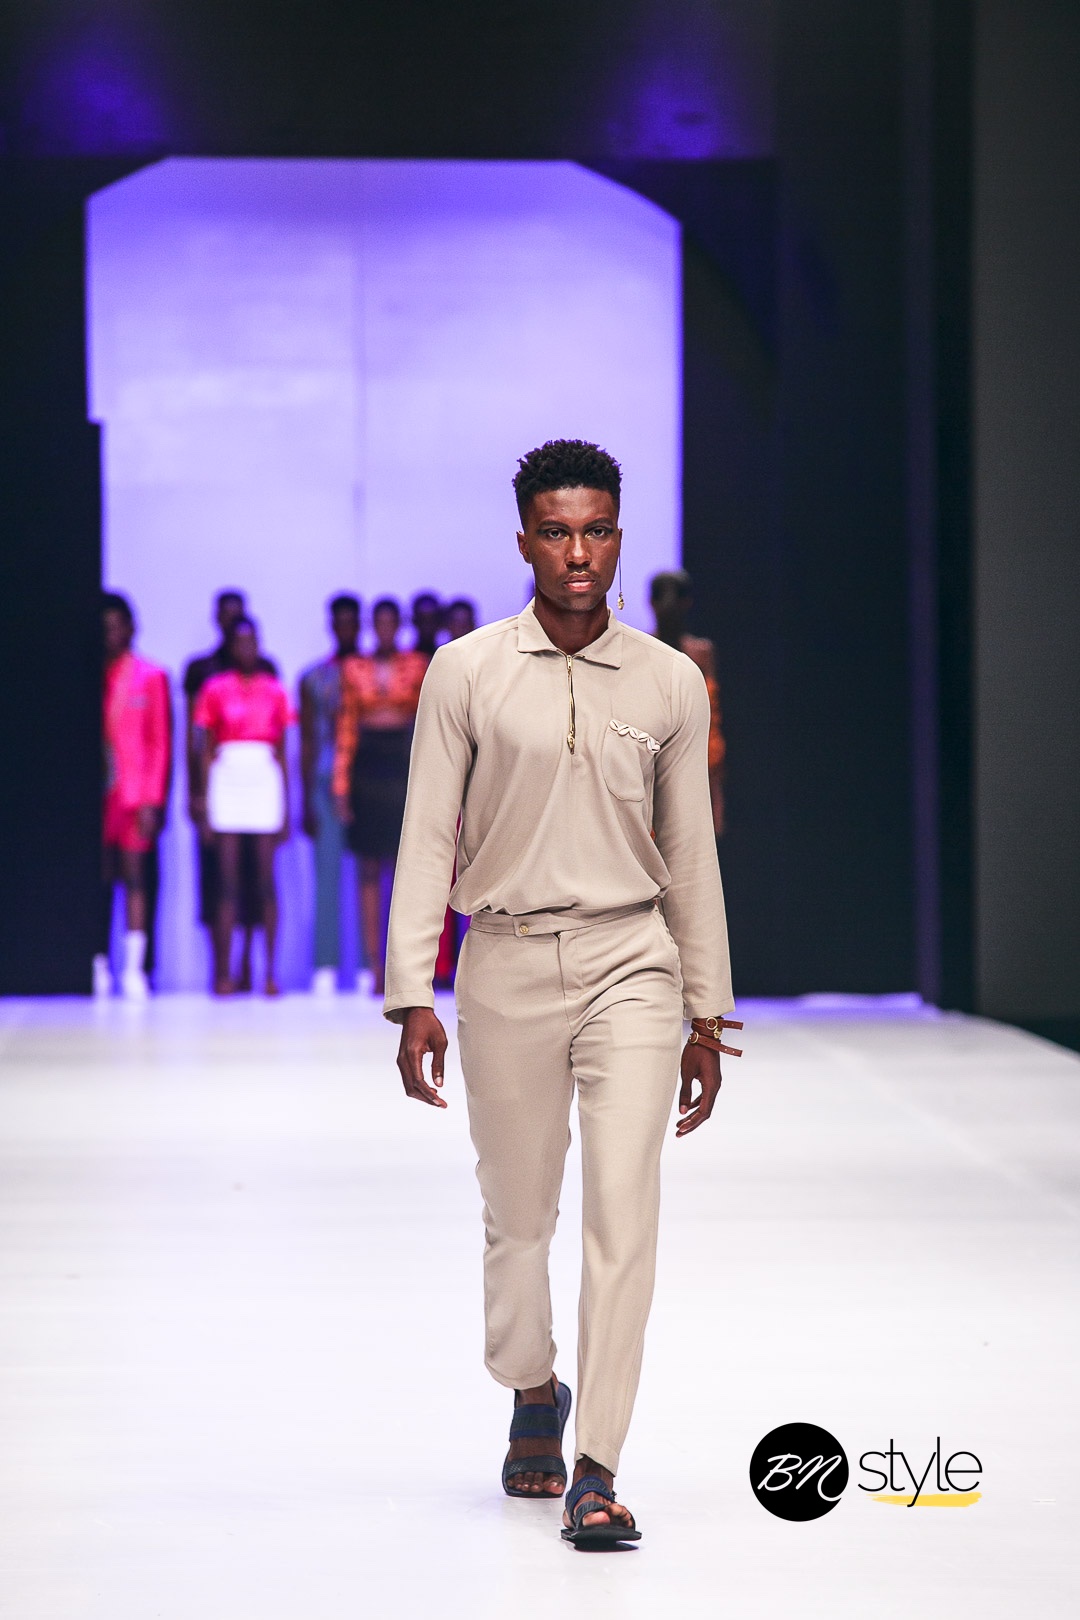 Lagos Fashion Week 2019 | Jermaine Bleu | BN Style